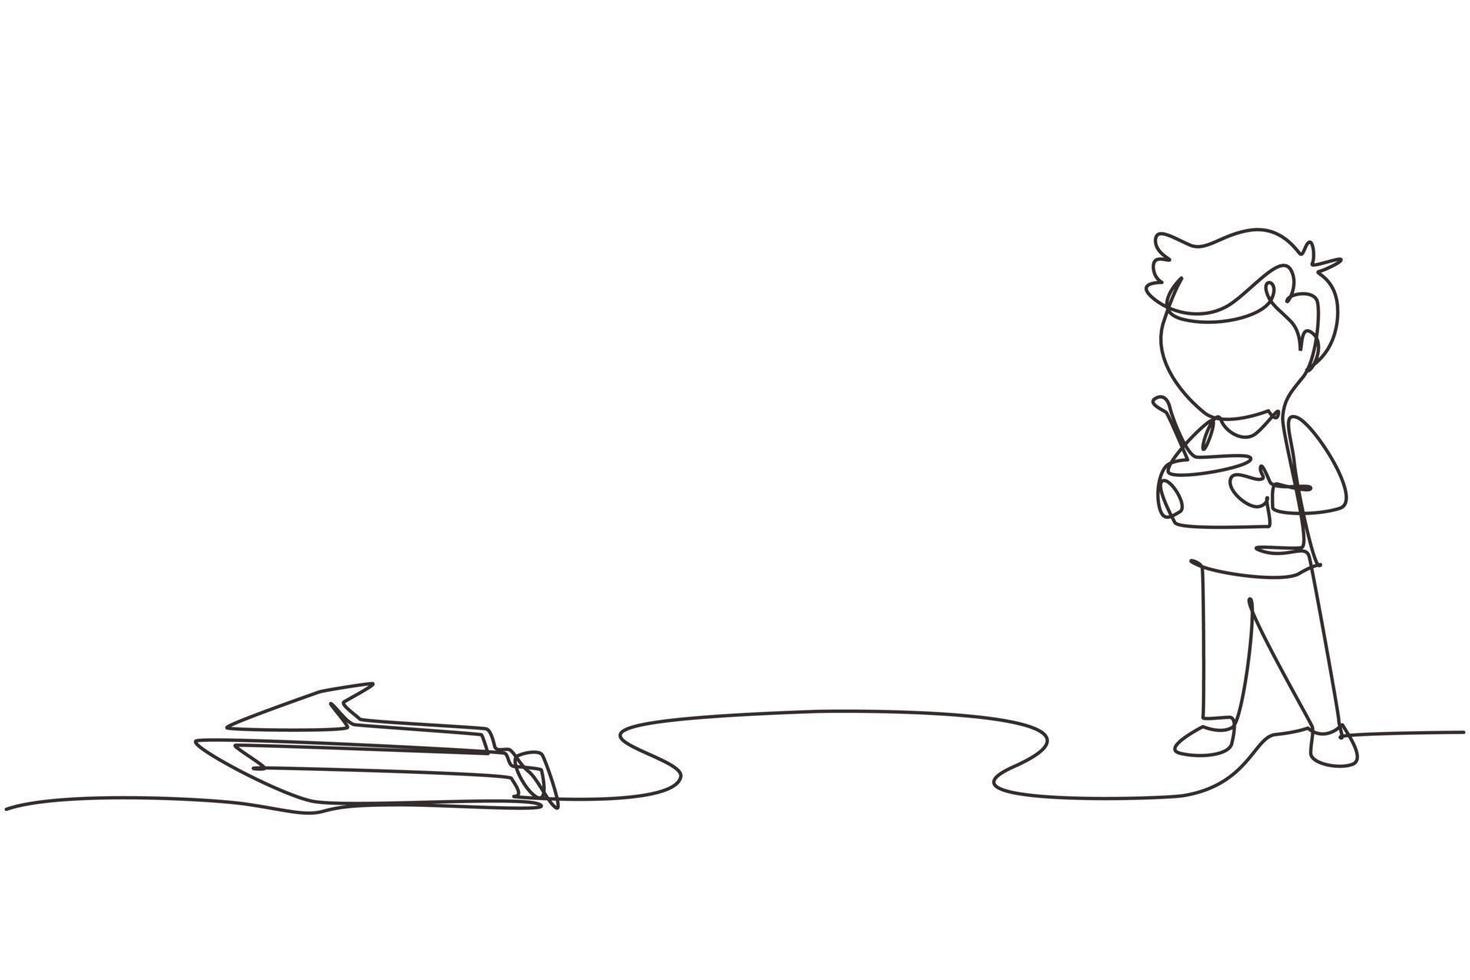 dessin continu d'une ligne garçon jouant avec un jouet de bateau à moteur télécommandé. enfants mignons jouant avec un jouet de bateau à moteur électronique avec télécommande dans les mains. graphique vectoriel de conception de dessin à une seule ligne